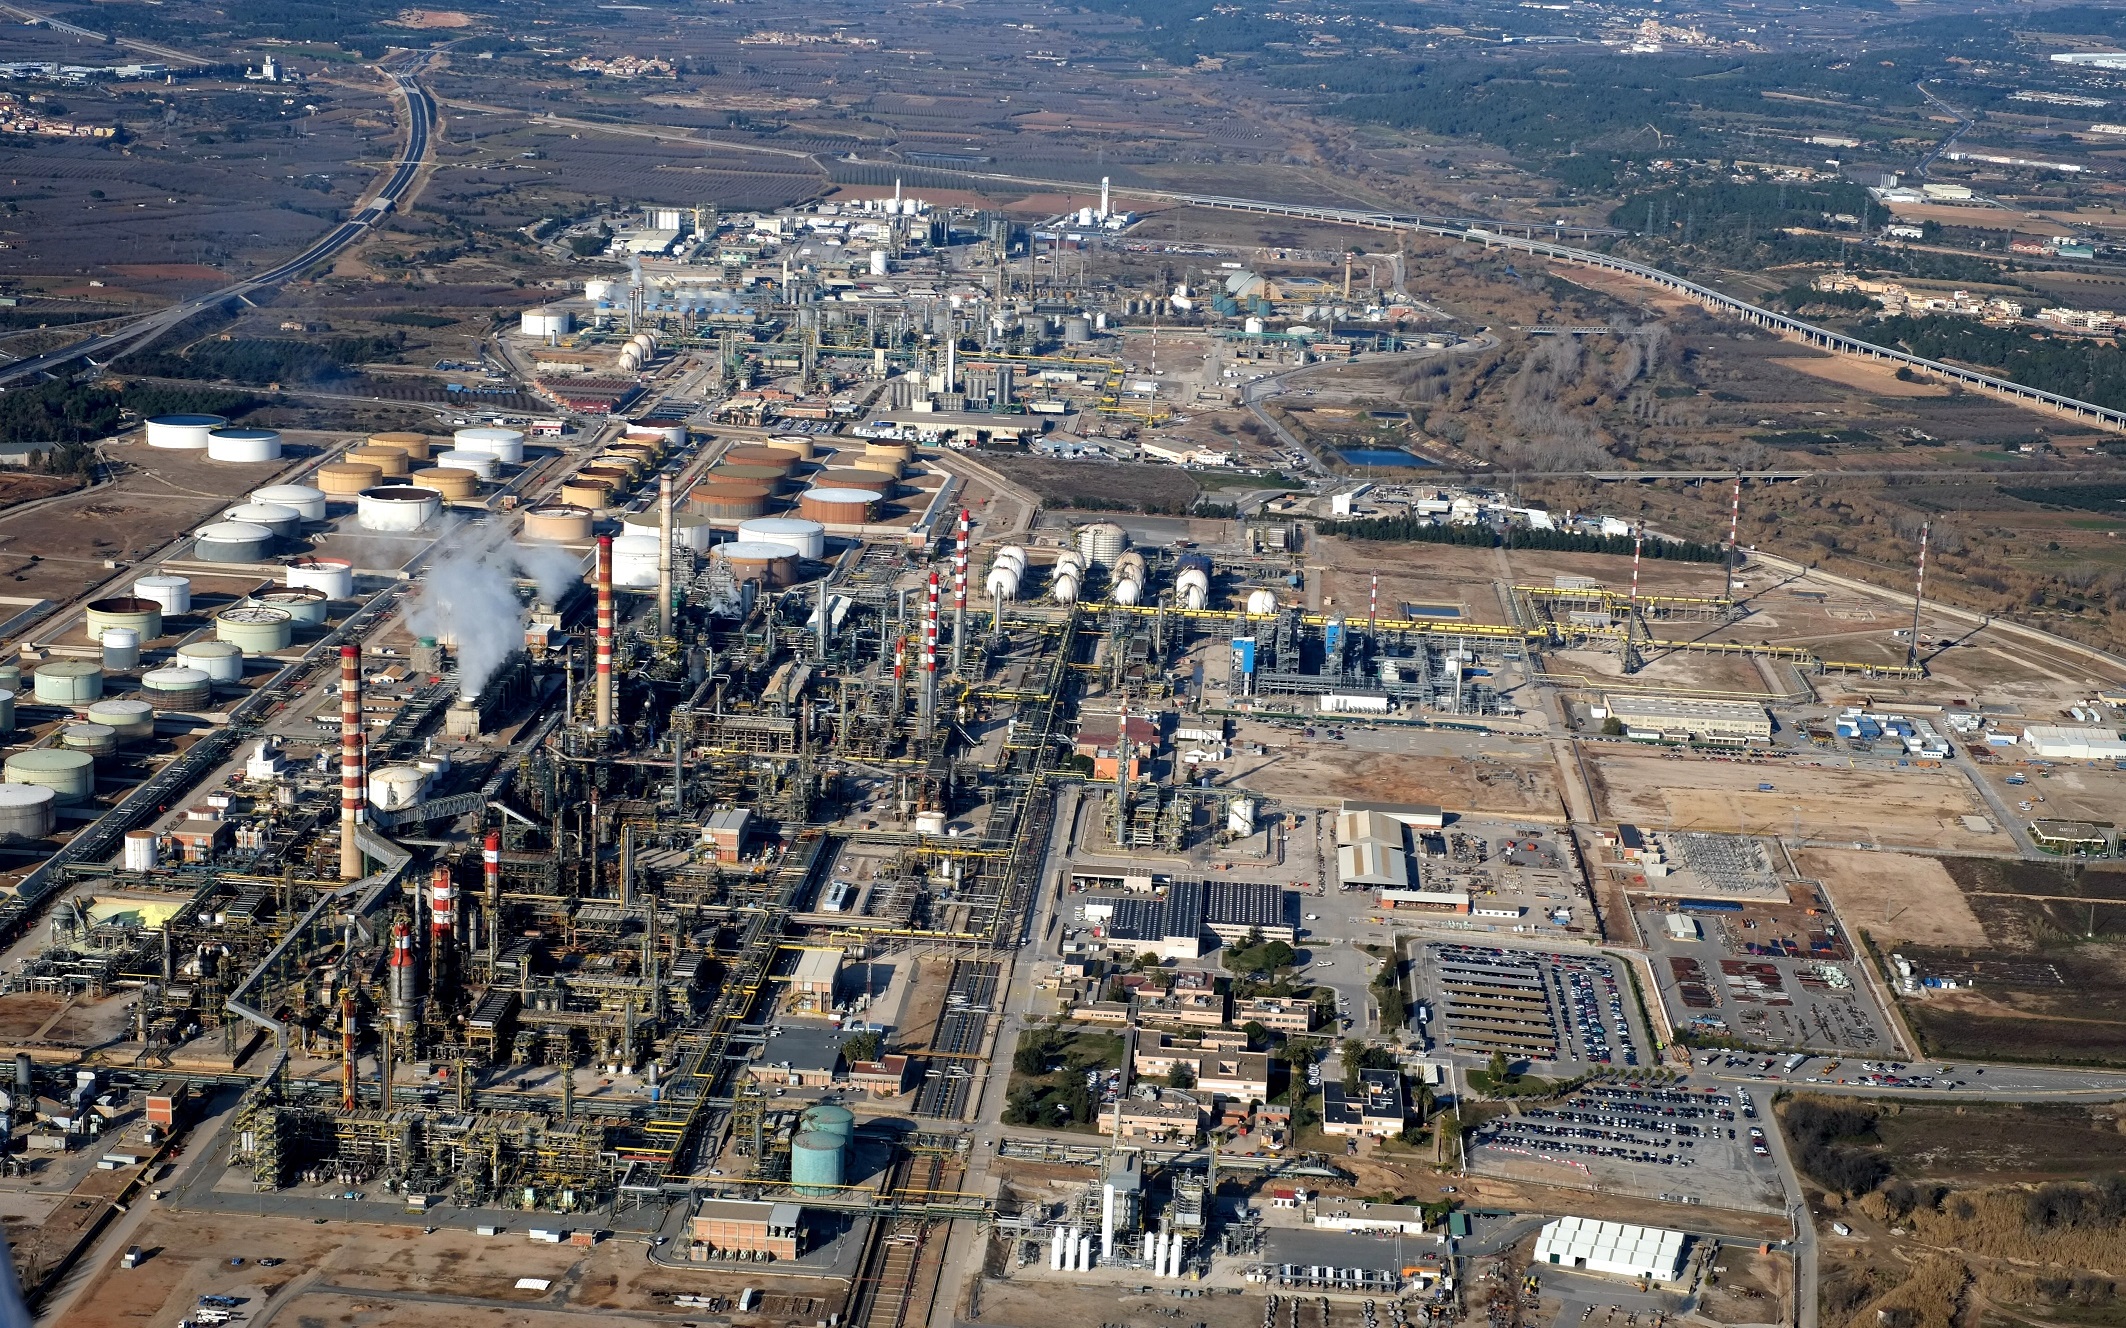 De demonstratielocatie van DOW (ChemMed Tarragona, Spanje). ChemMed Tarragona is een industrieel, logistiek, academisch en wetenschappelijk chemisch cluster gelegen in het grotere gebied Tarragona in het noordoosten van Spanje. (Bron: Website REWATCH)